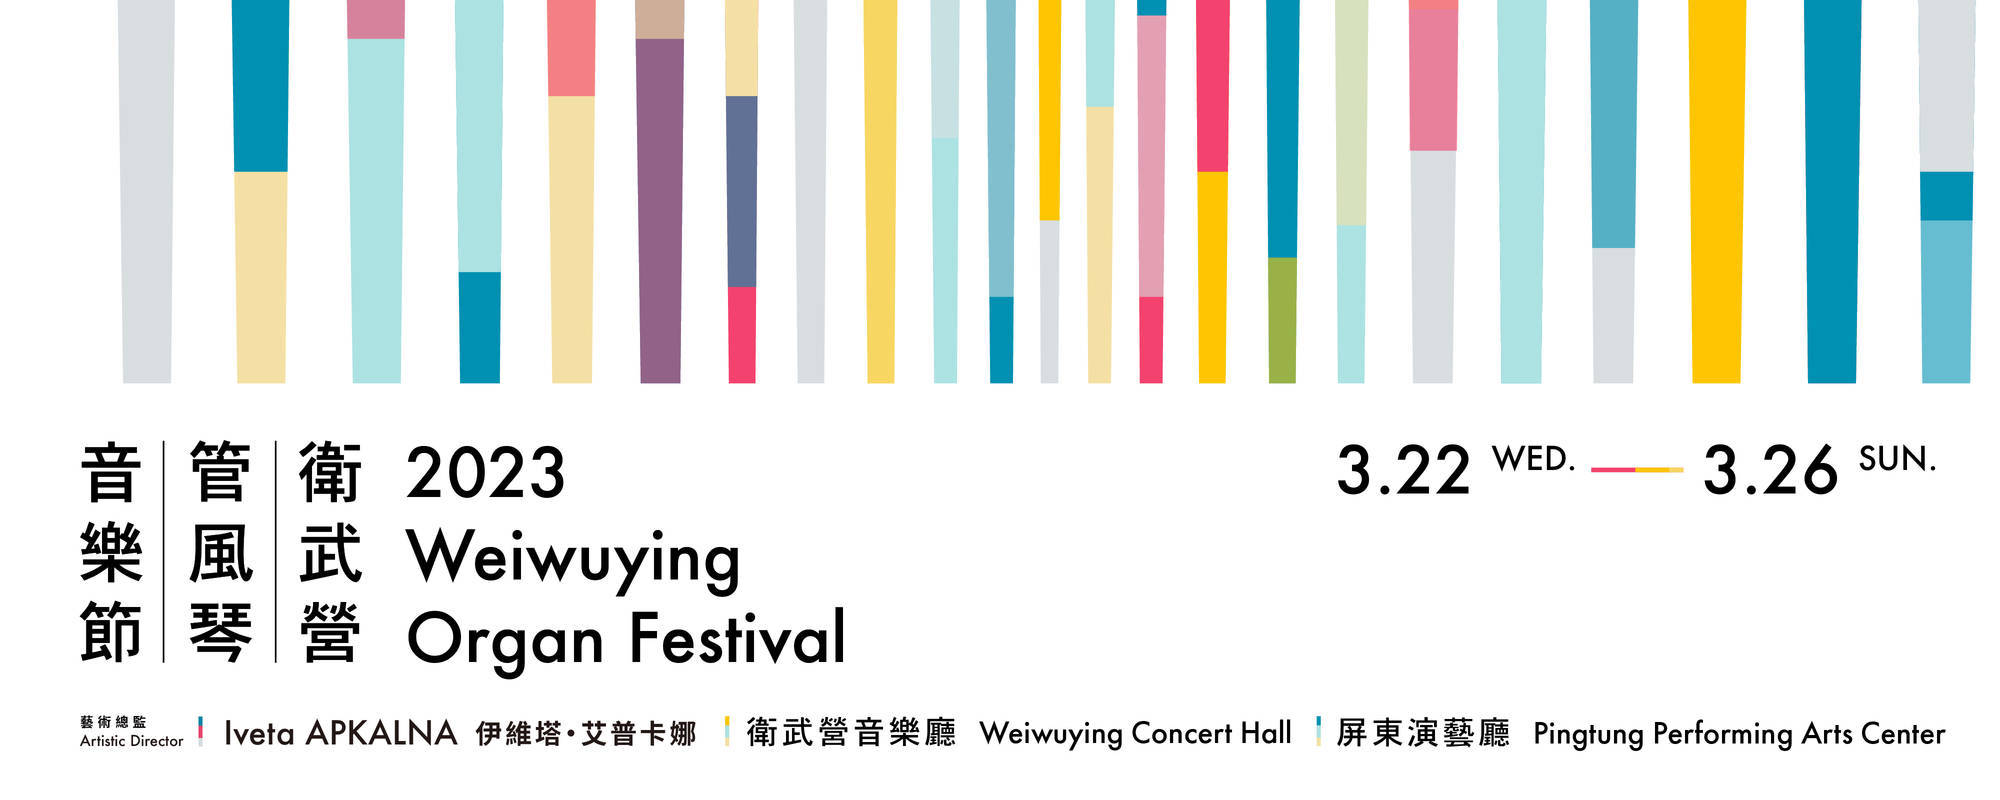 2023 Weiwuying Organ Festival